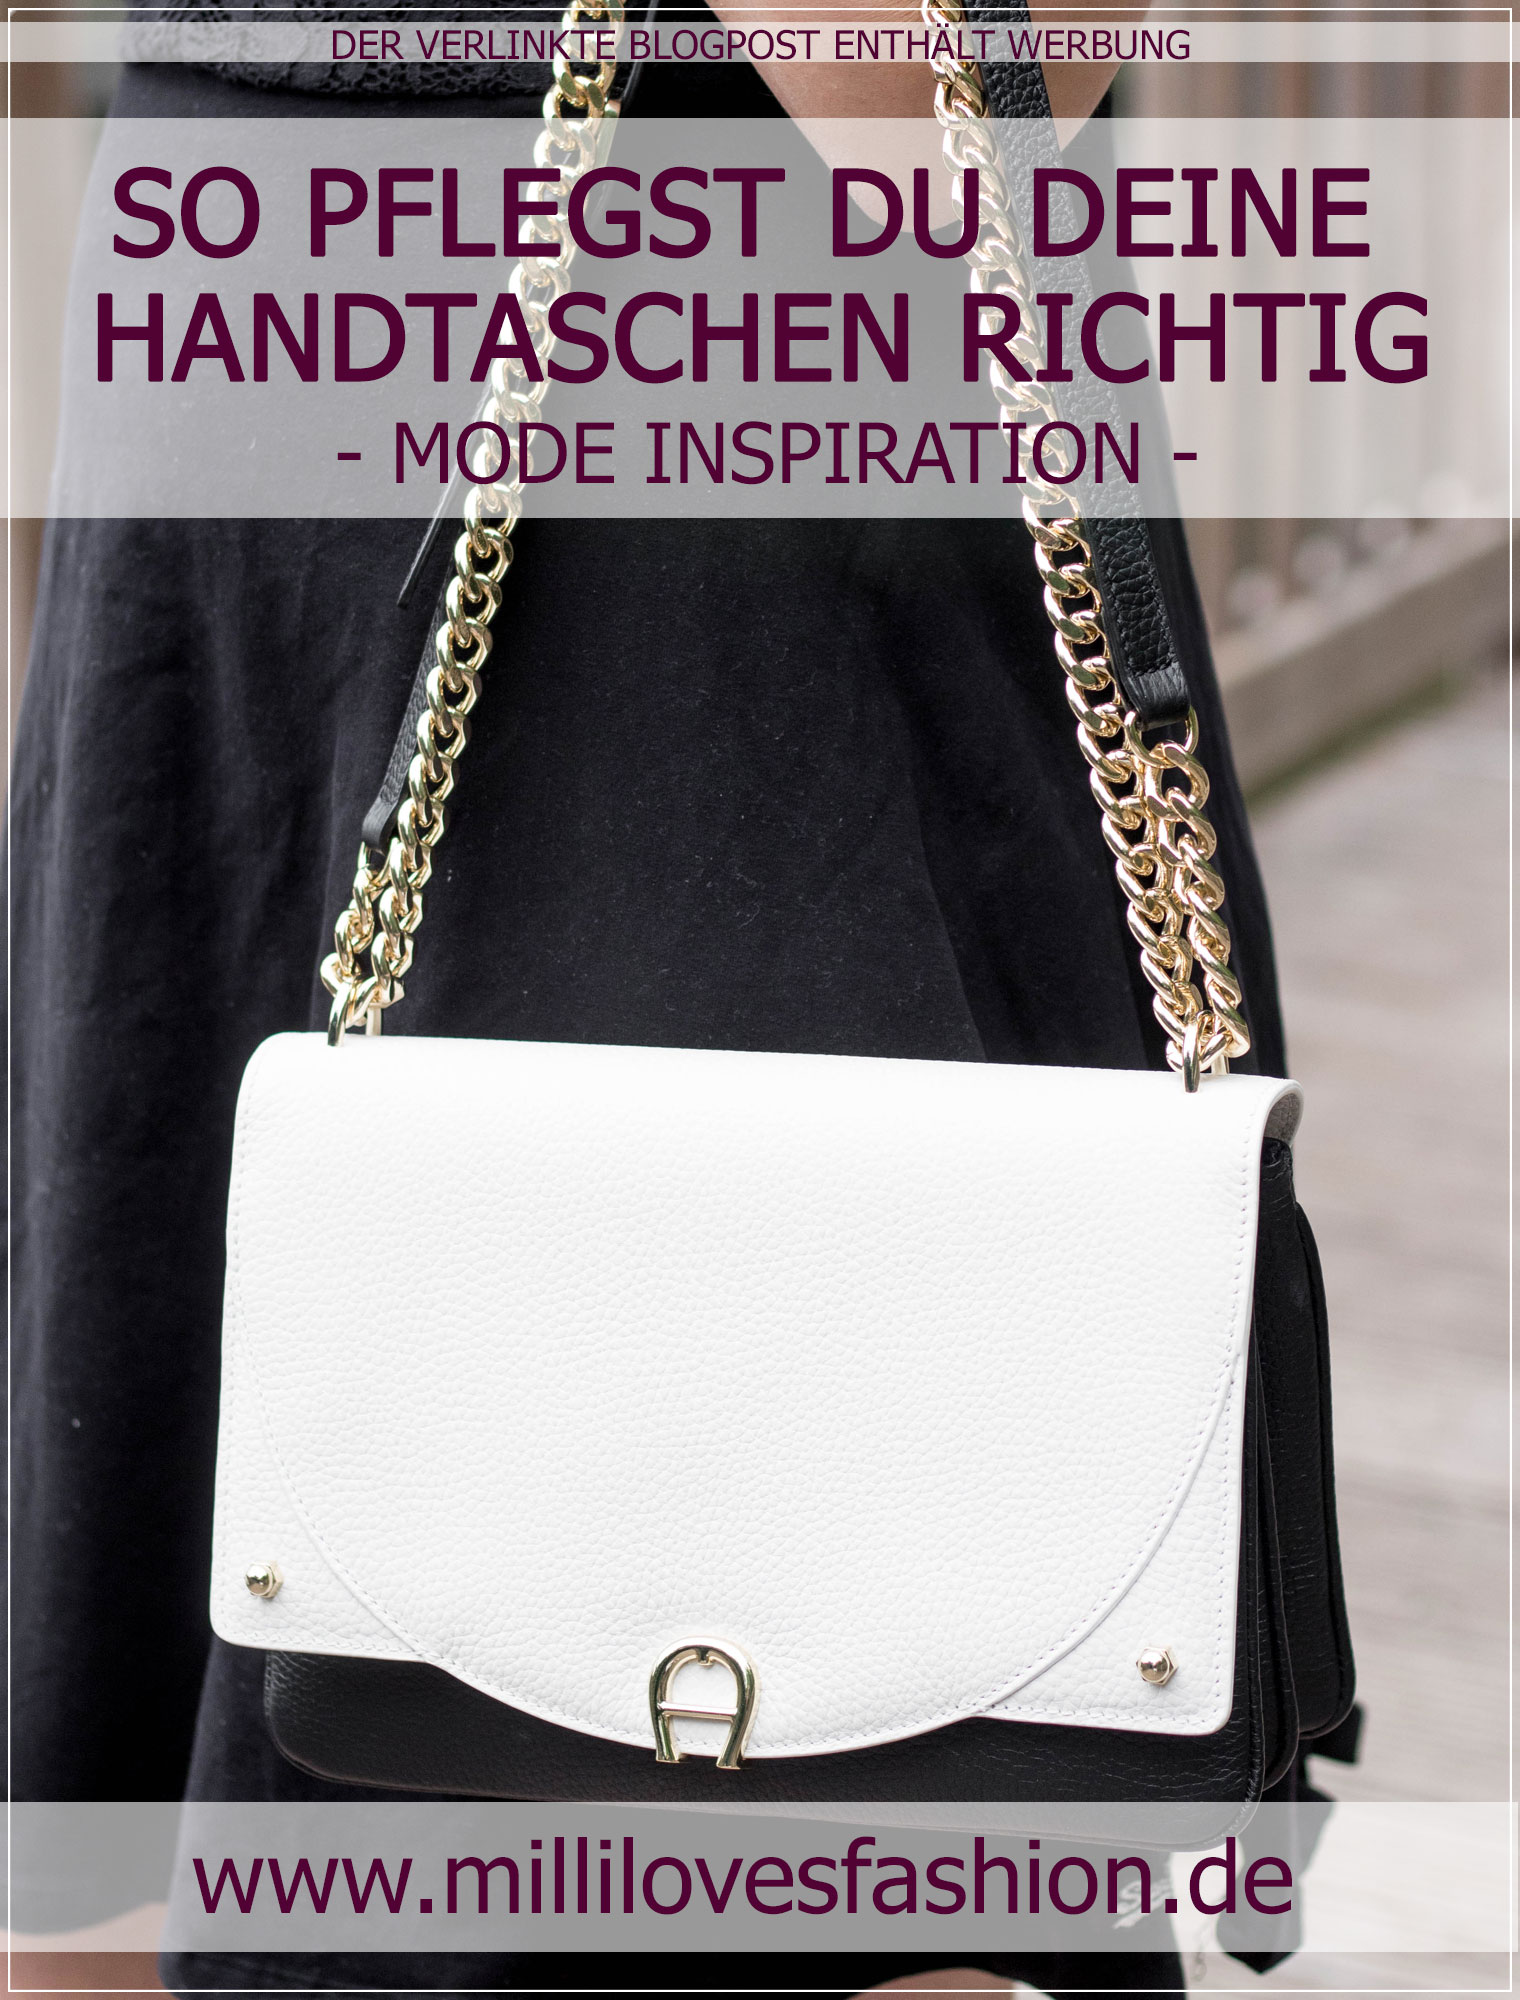 Handtaschen, Pflegetipps, Handtaschenpflege, Aufbewahrung, Fashionblog, Ruhrgebiet, Lederpflege, Tipps zur Handtaschenpflege